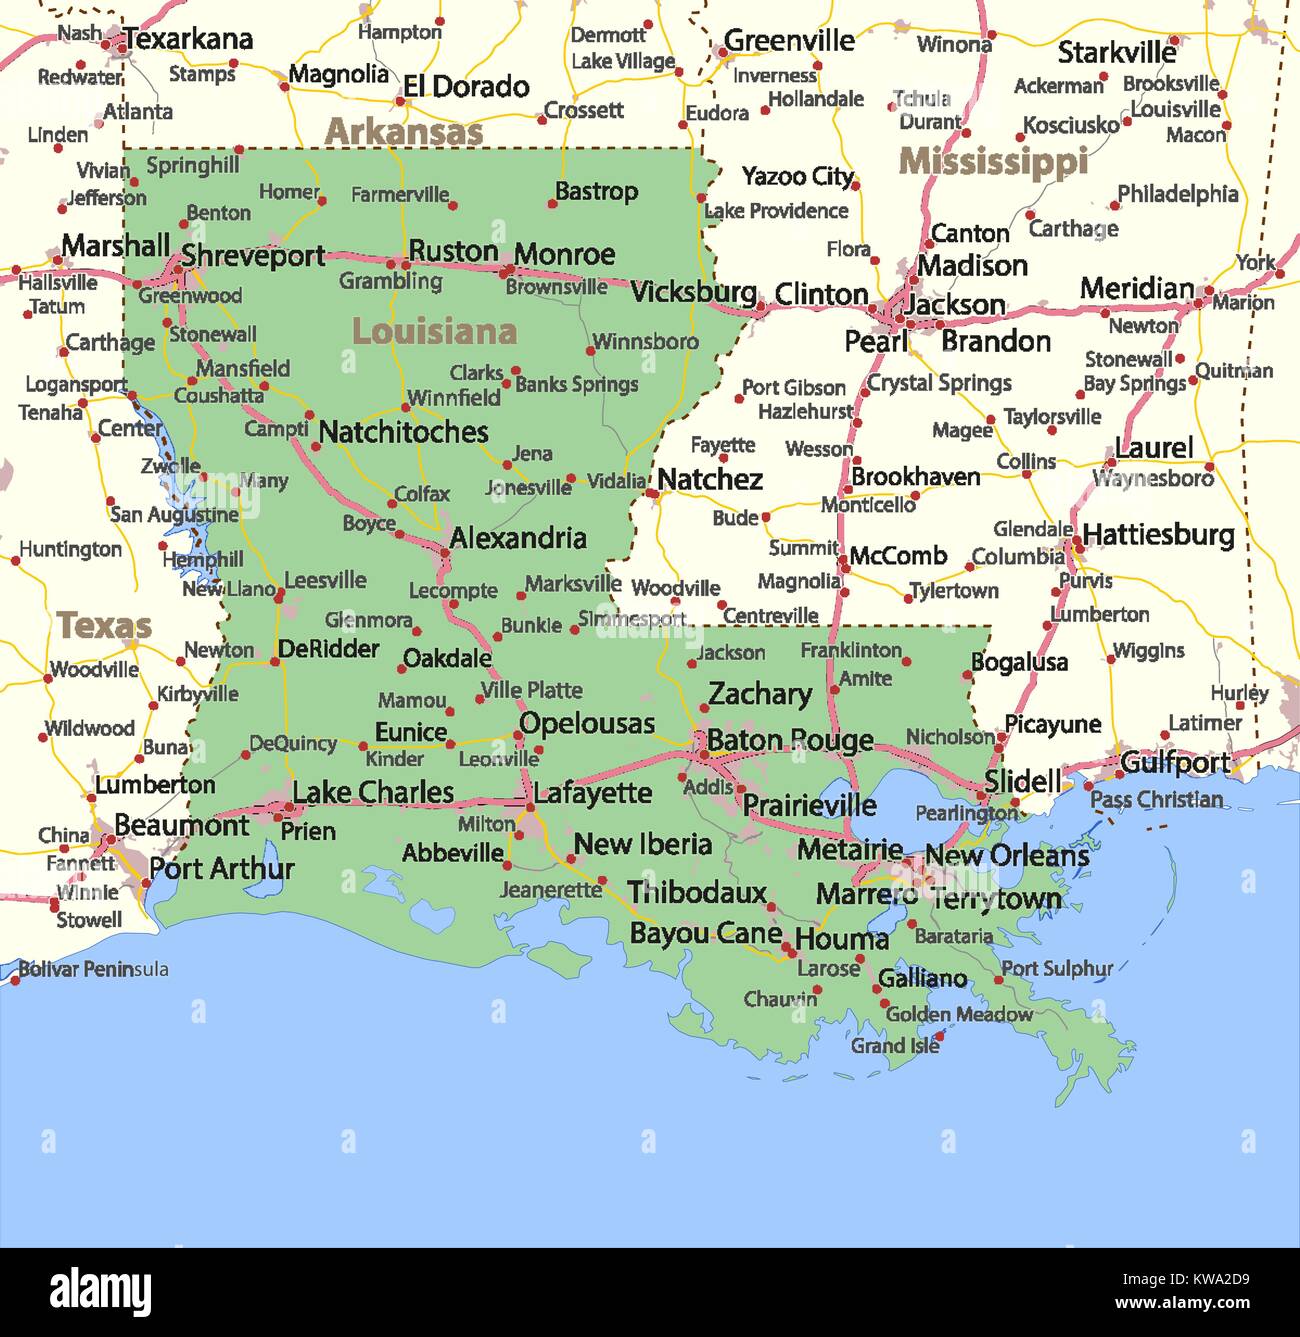 Mappa della Louisiana. Mostra i confini, zone urbane, nomi di località, strade e autostrade. Proiezione: proiezione di Mercatore. Illustrazione Vettoriale